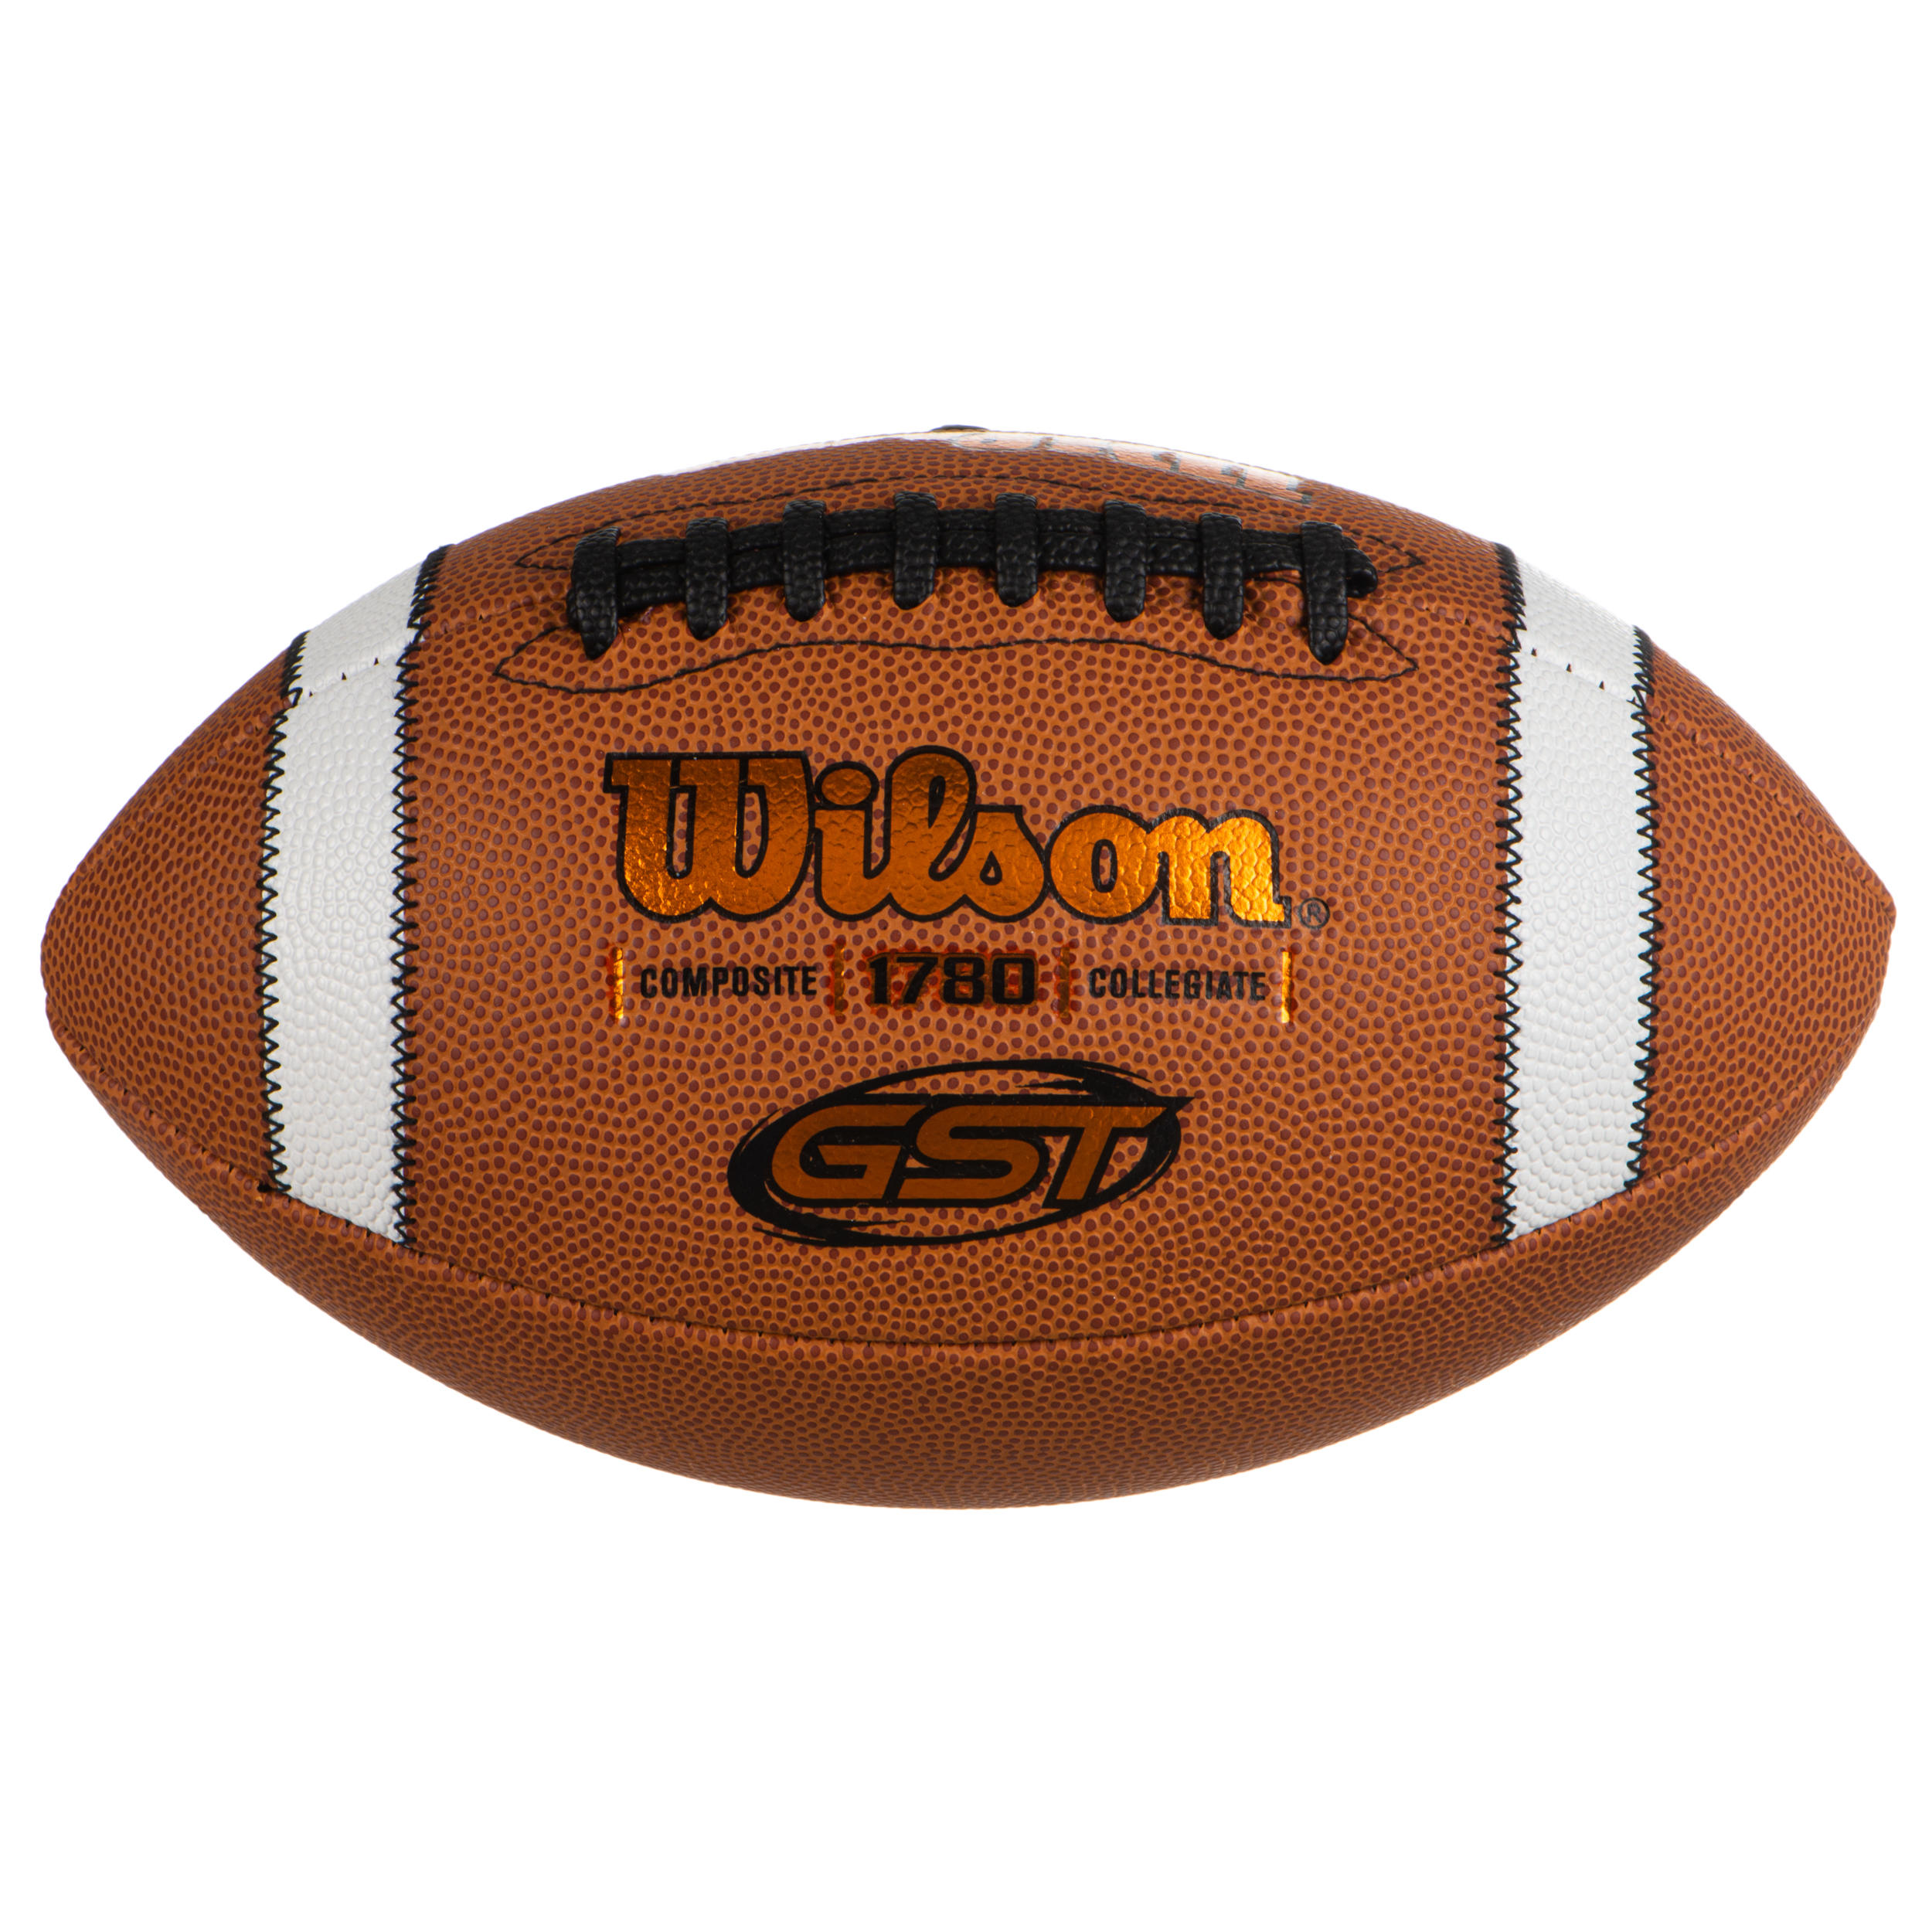 WILSON Ballon de football américain GST COMPOSITE OFFICIAL adulte marron - WILSON - Official